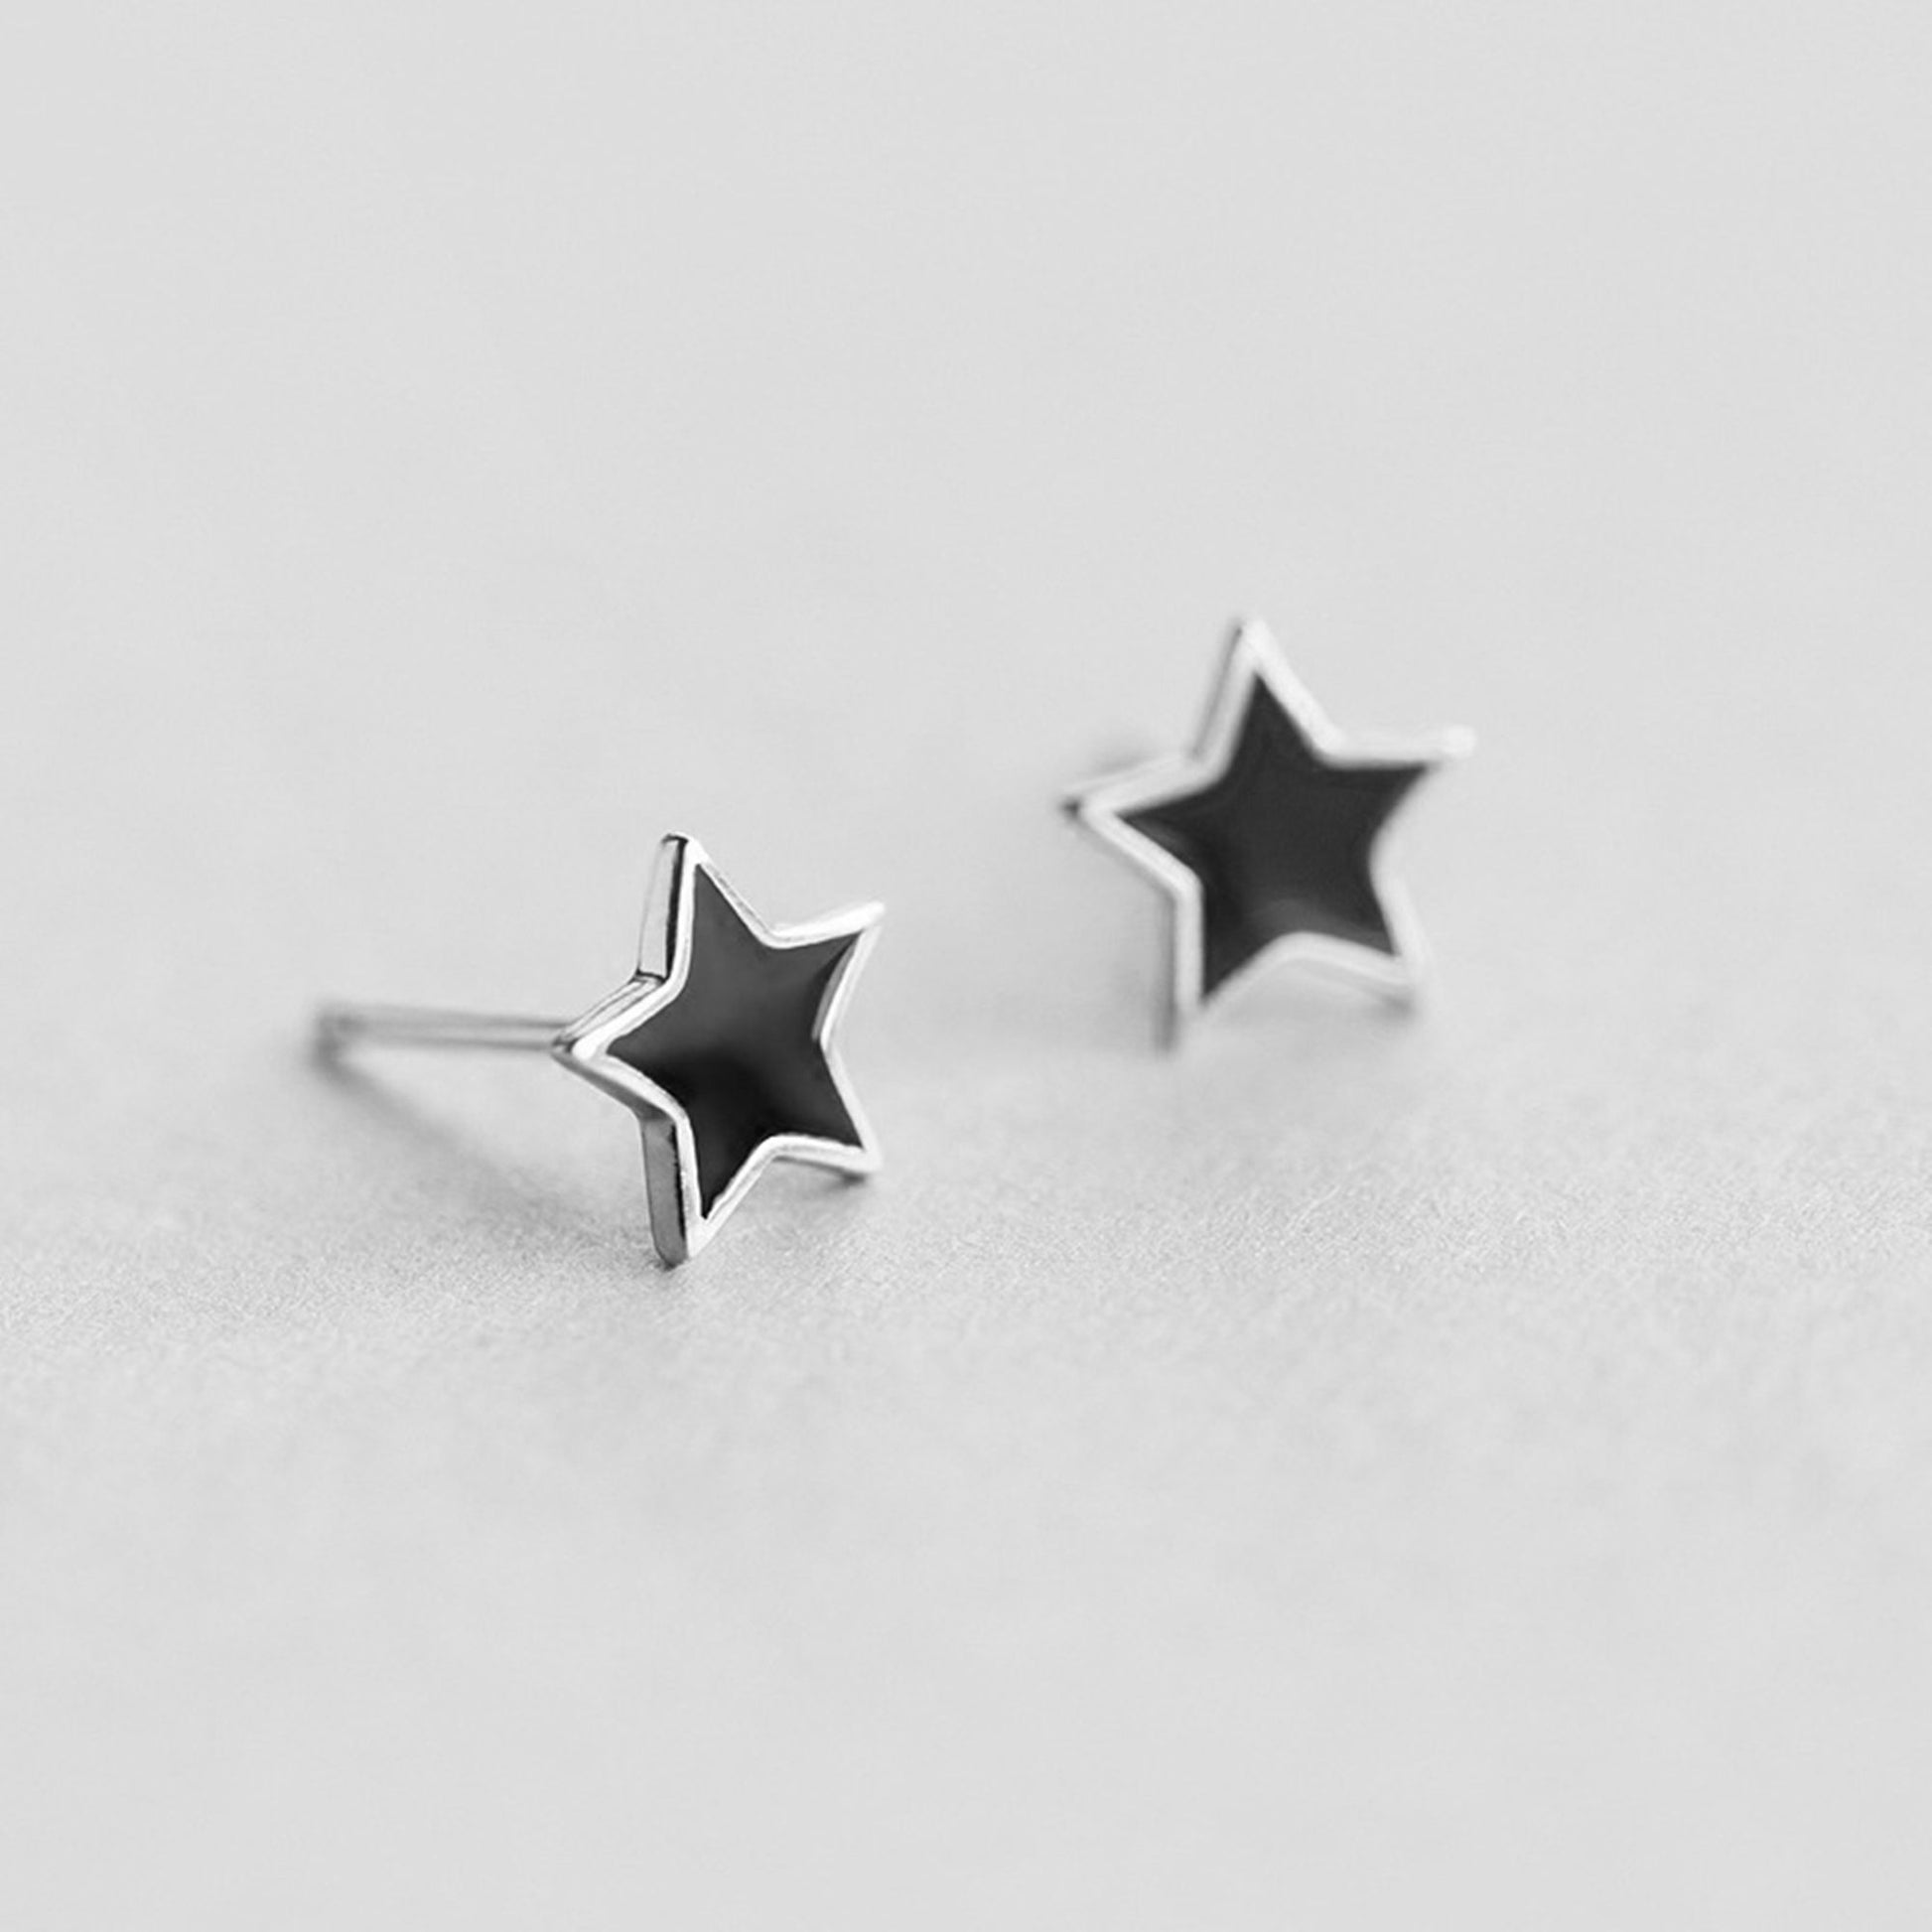 Black Star Stud Earrings in Rhodium Plated Sterling Silver - 8mm Size Earrings - sugarkittenlondon